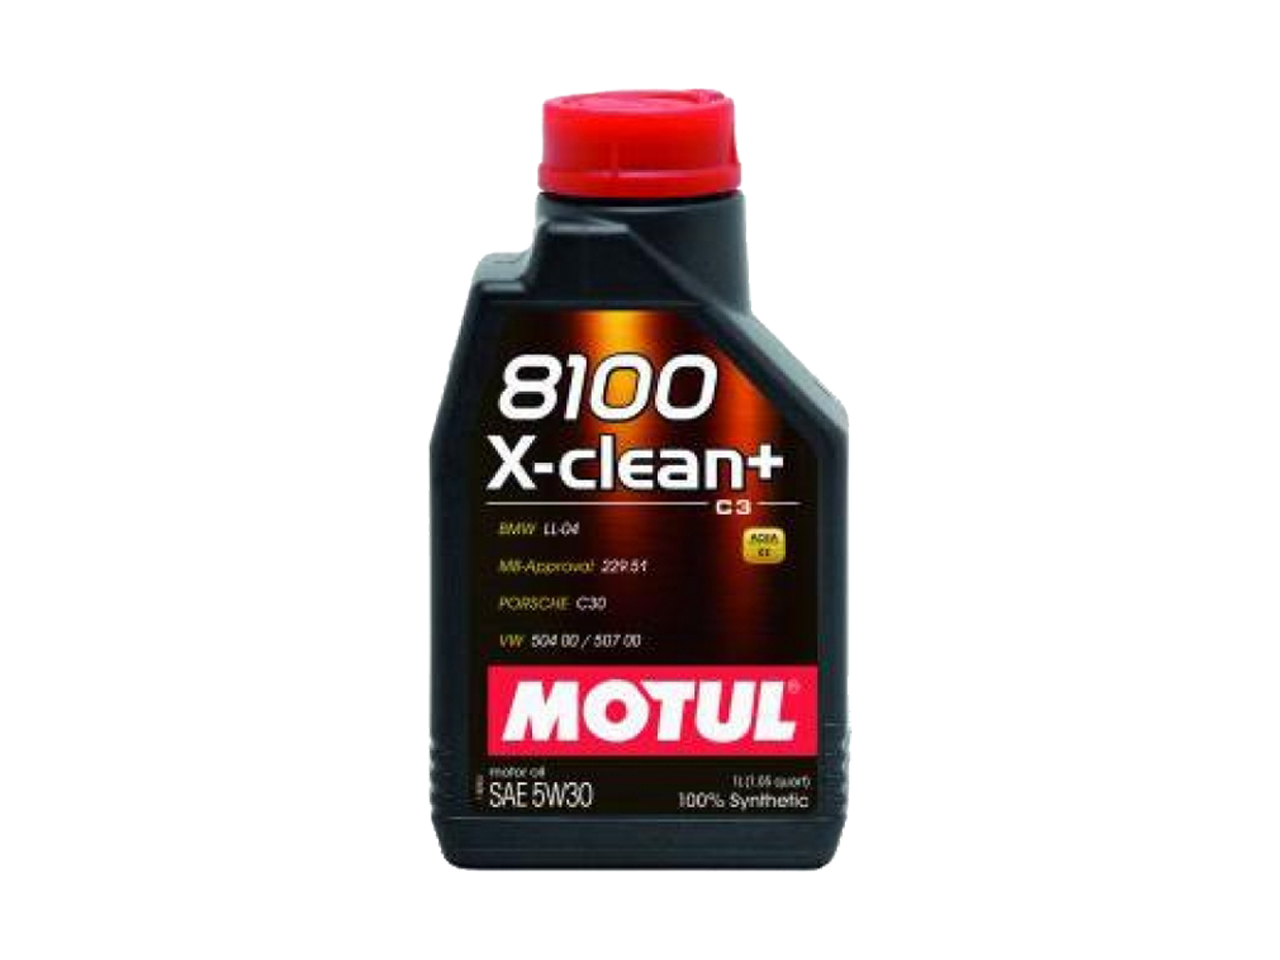 Купить недорого Моторное масло Motul 8100 X-clean + в Москве